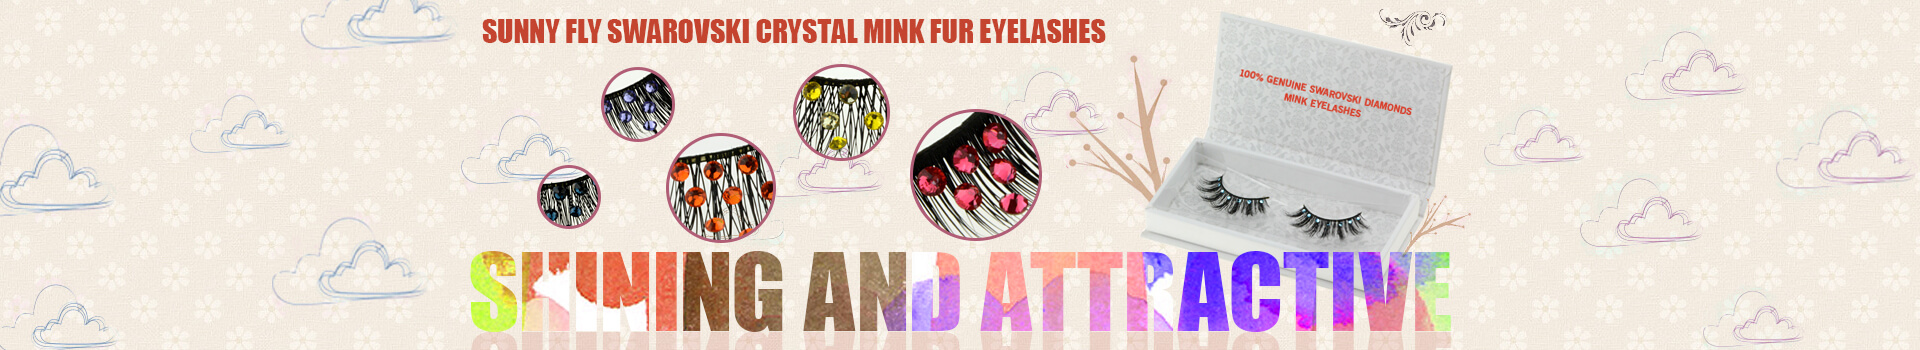 Swarovski Crystal Mink Fur Eyelashes MS29